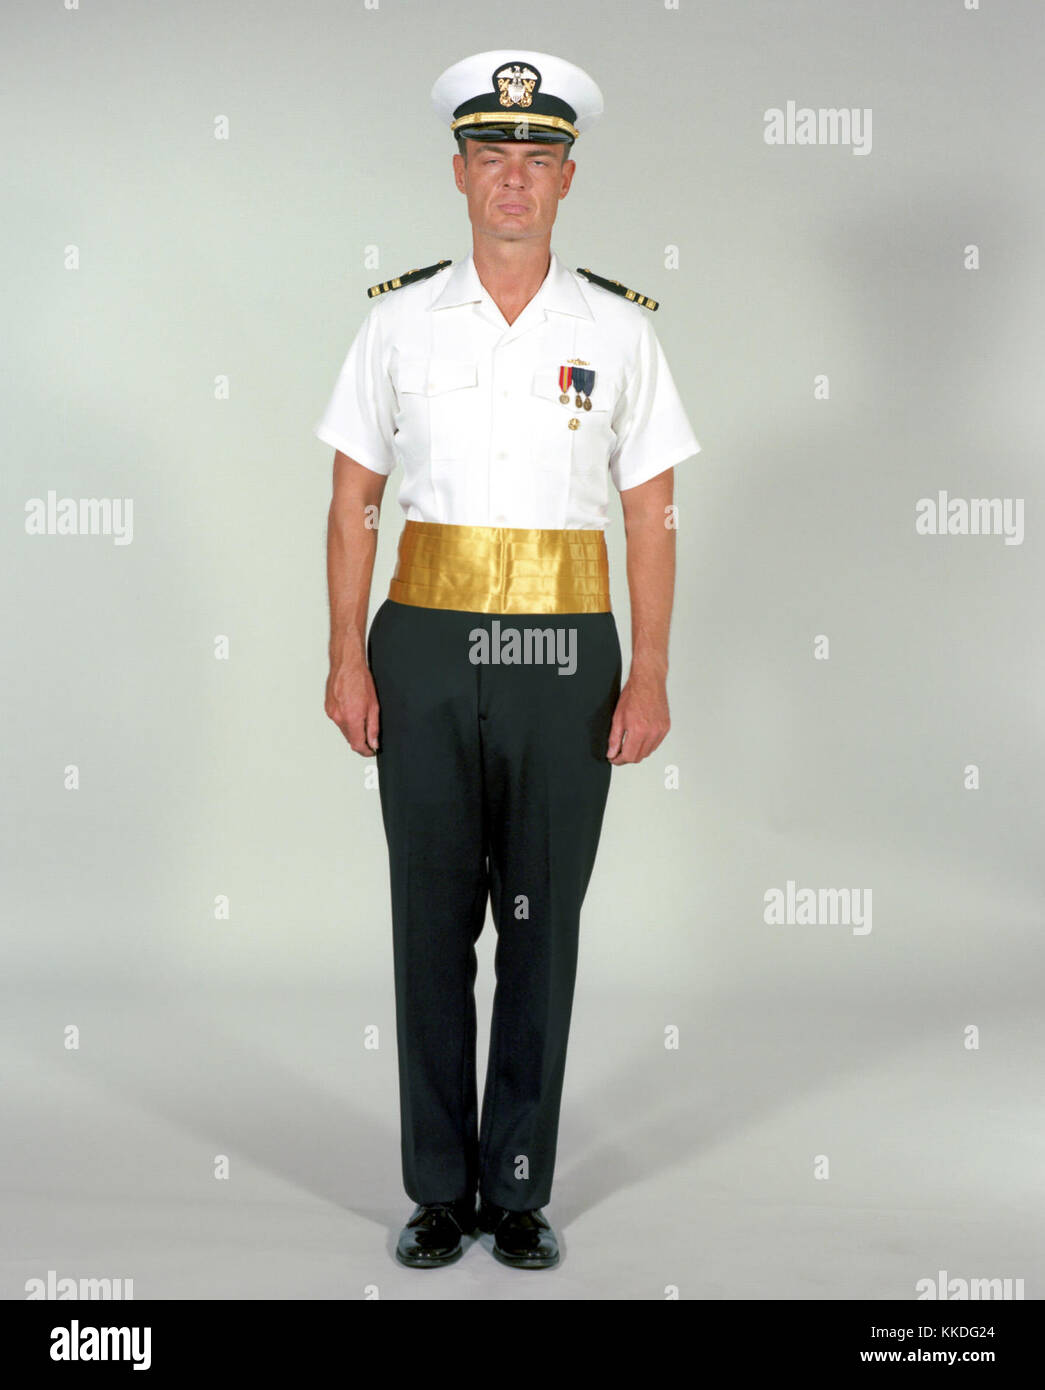 Uniforme de vestir marino fotografías de - Alamy